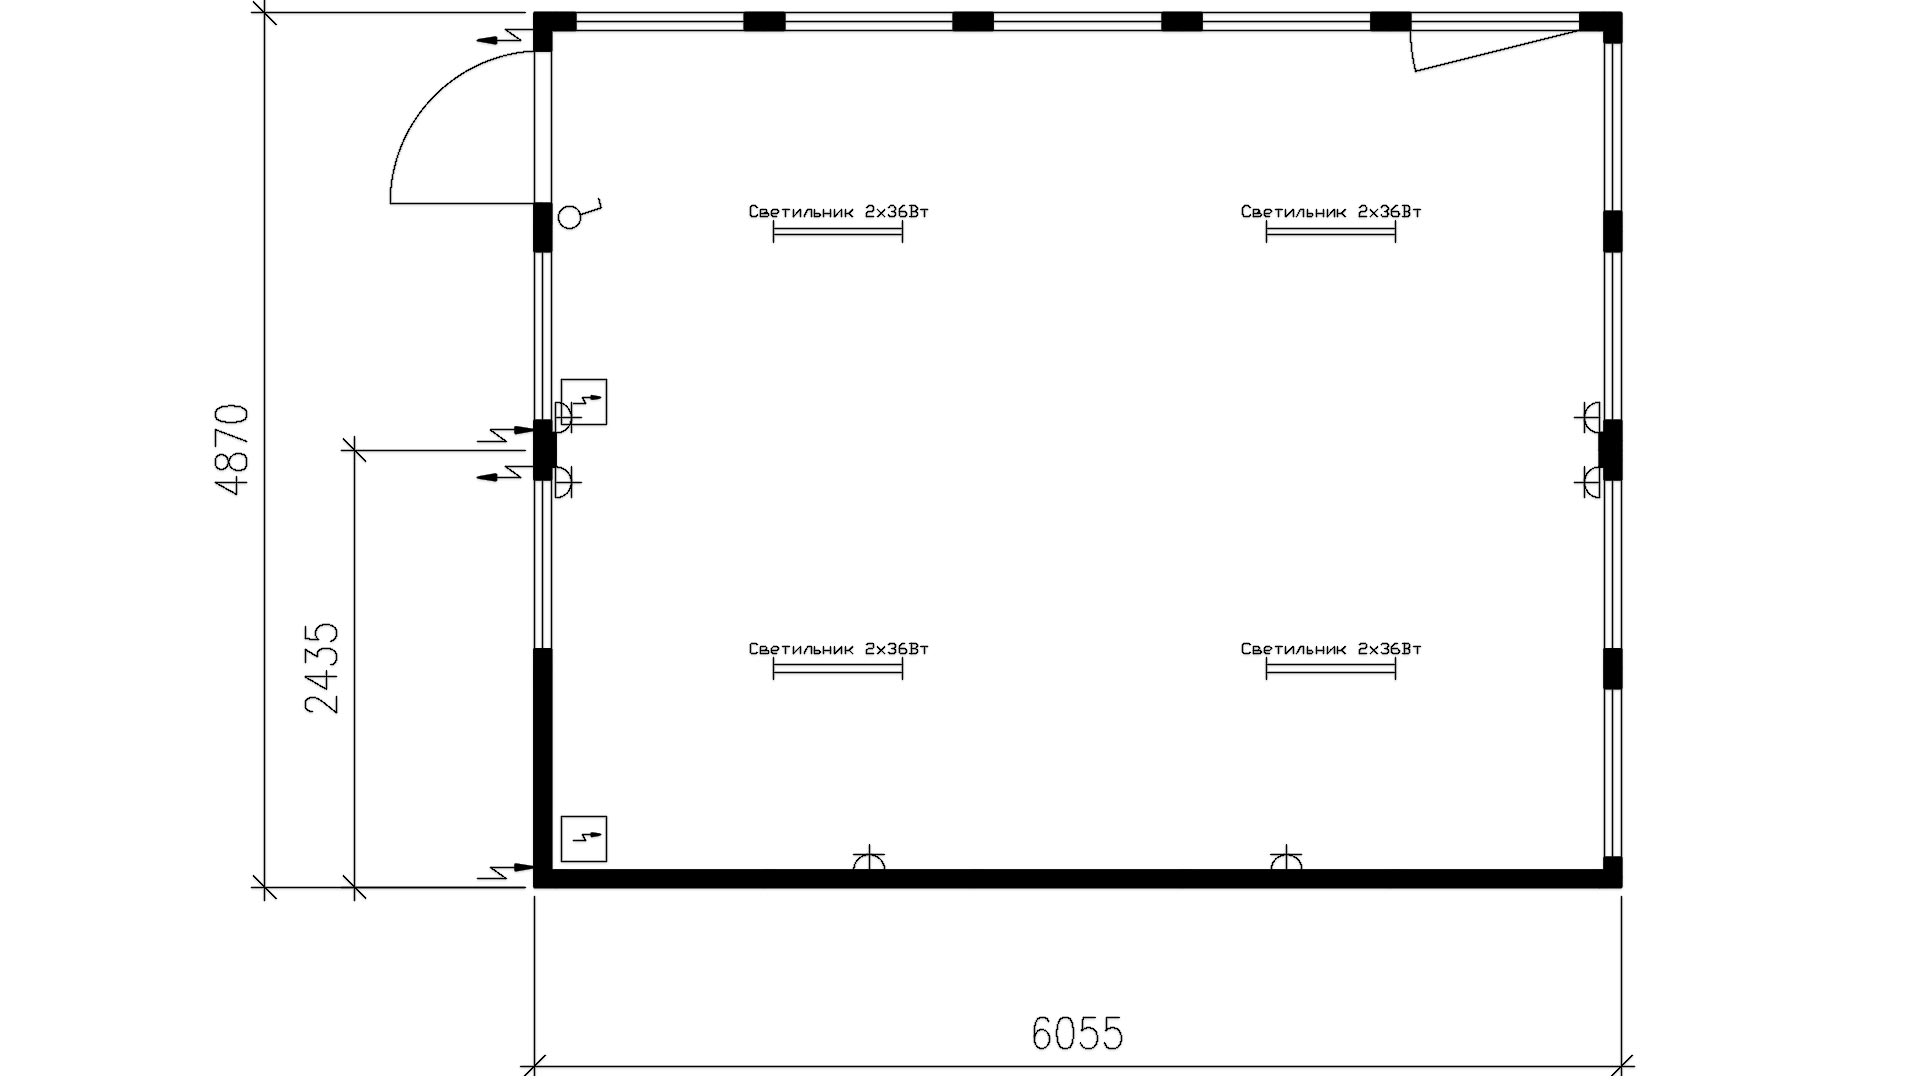 Планировка сдвоенного блок-контейнера (10 витраж, 1 окно, 1 дверь) 20-футов, размеры: 2989/4870/2750 (Д/Ш/В) мм (2)